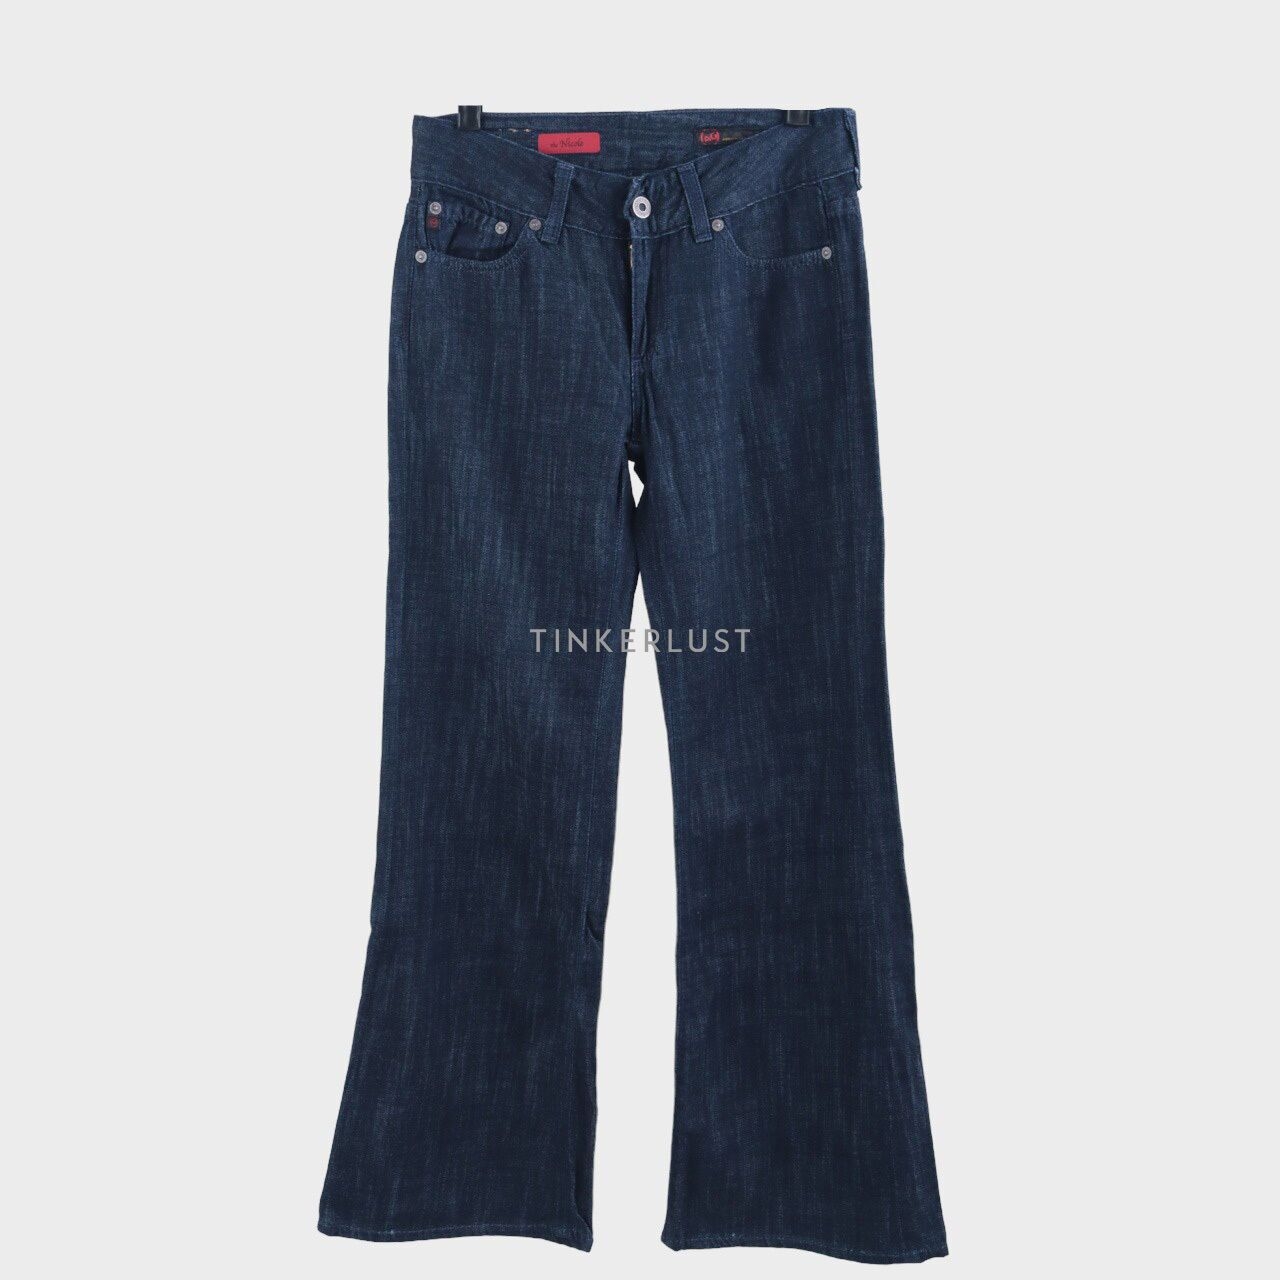 Adriano Goldschmied Dark Blue Jeans Long Pants